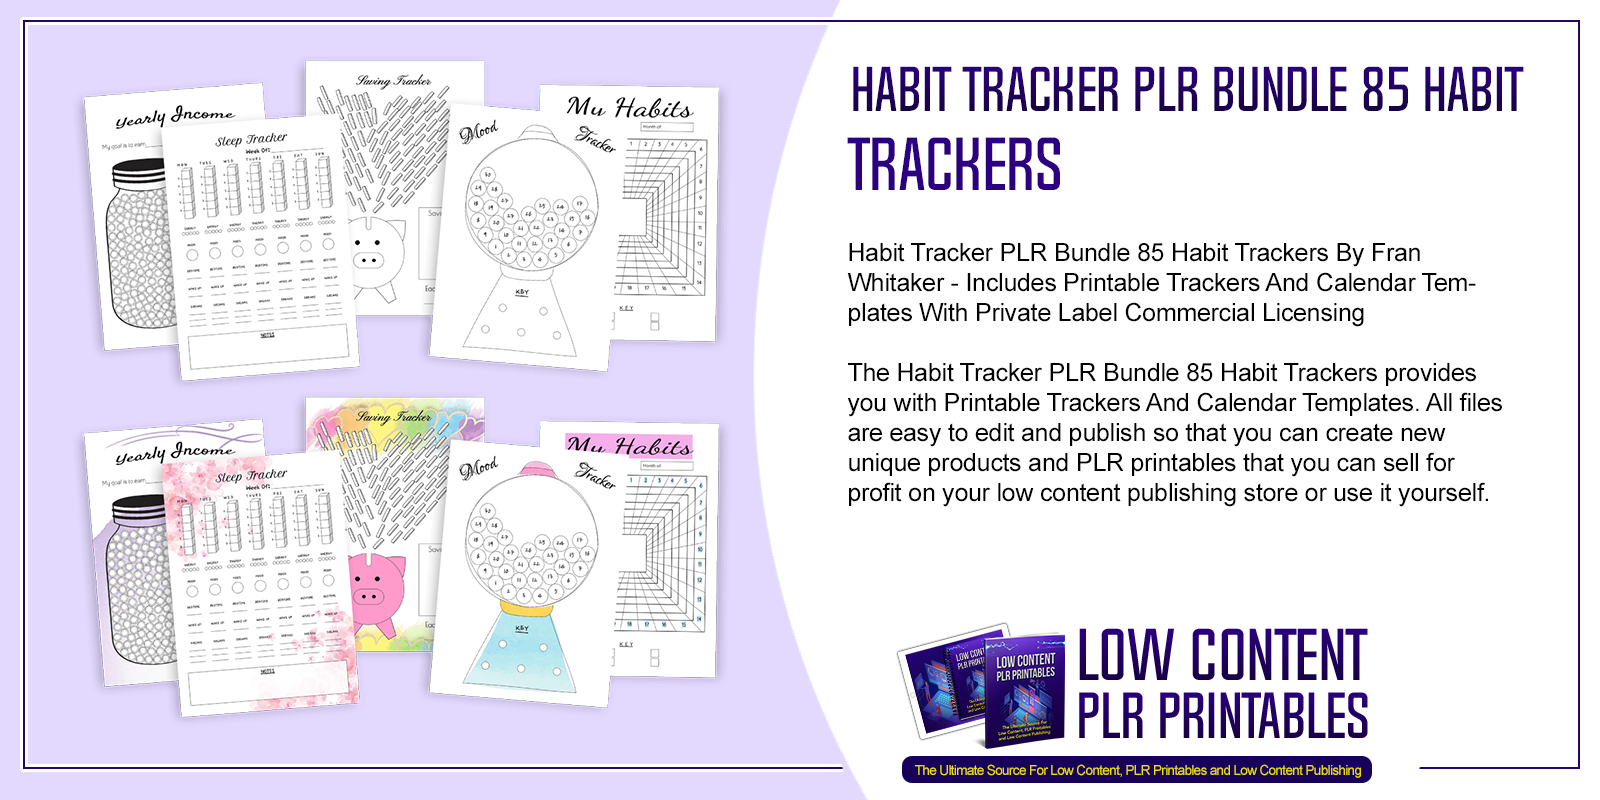 Habit Tracker PLR Bundle 85 Habit Trackers